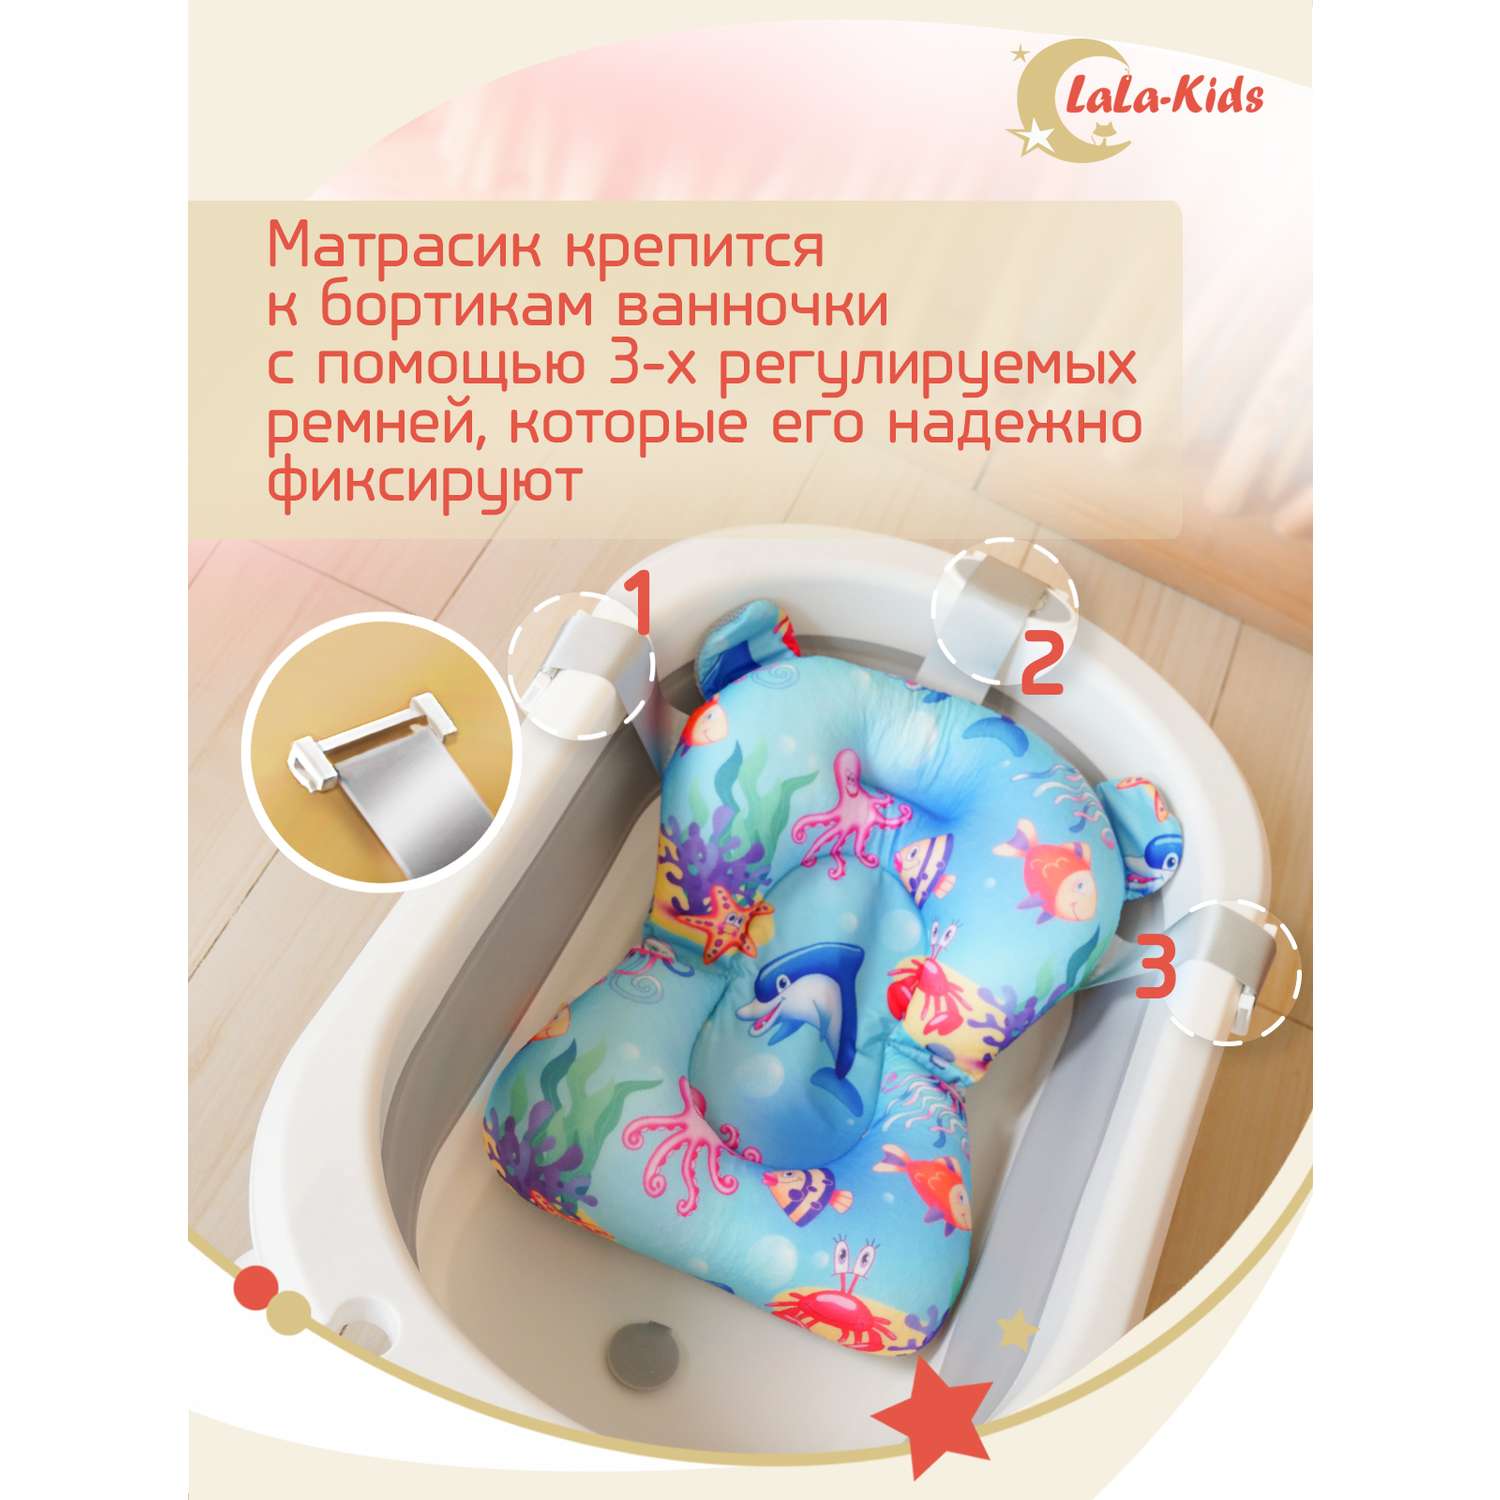 Детская ванночка LaLa-Kids складная для купания новорожденных с термометром и матрасиком в комплекте - фото 16